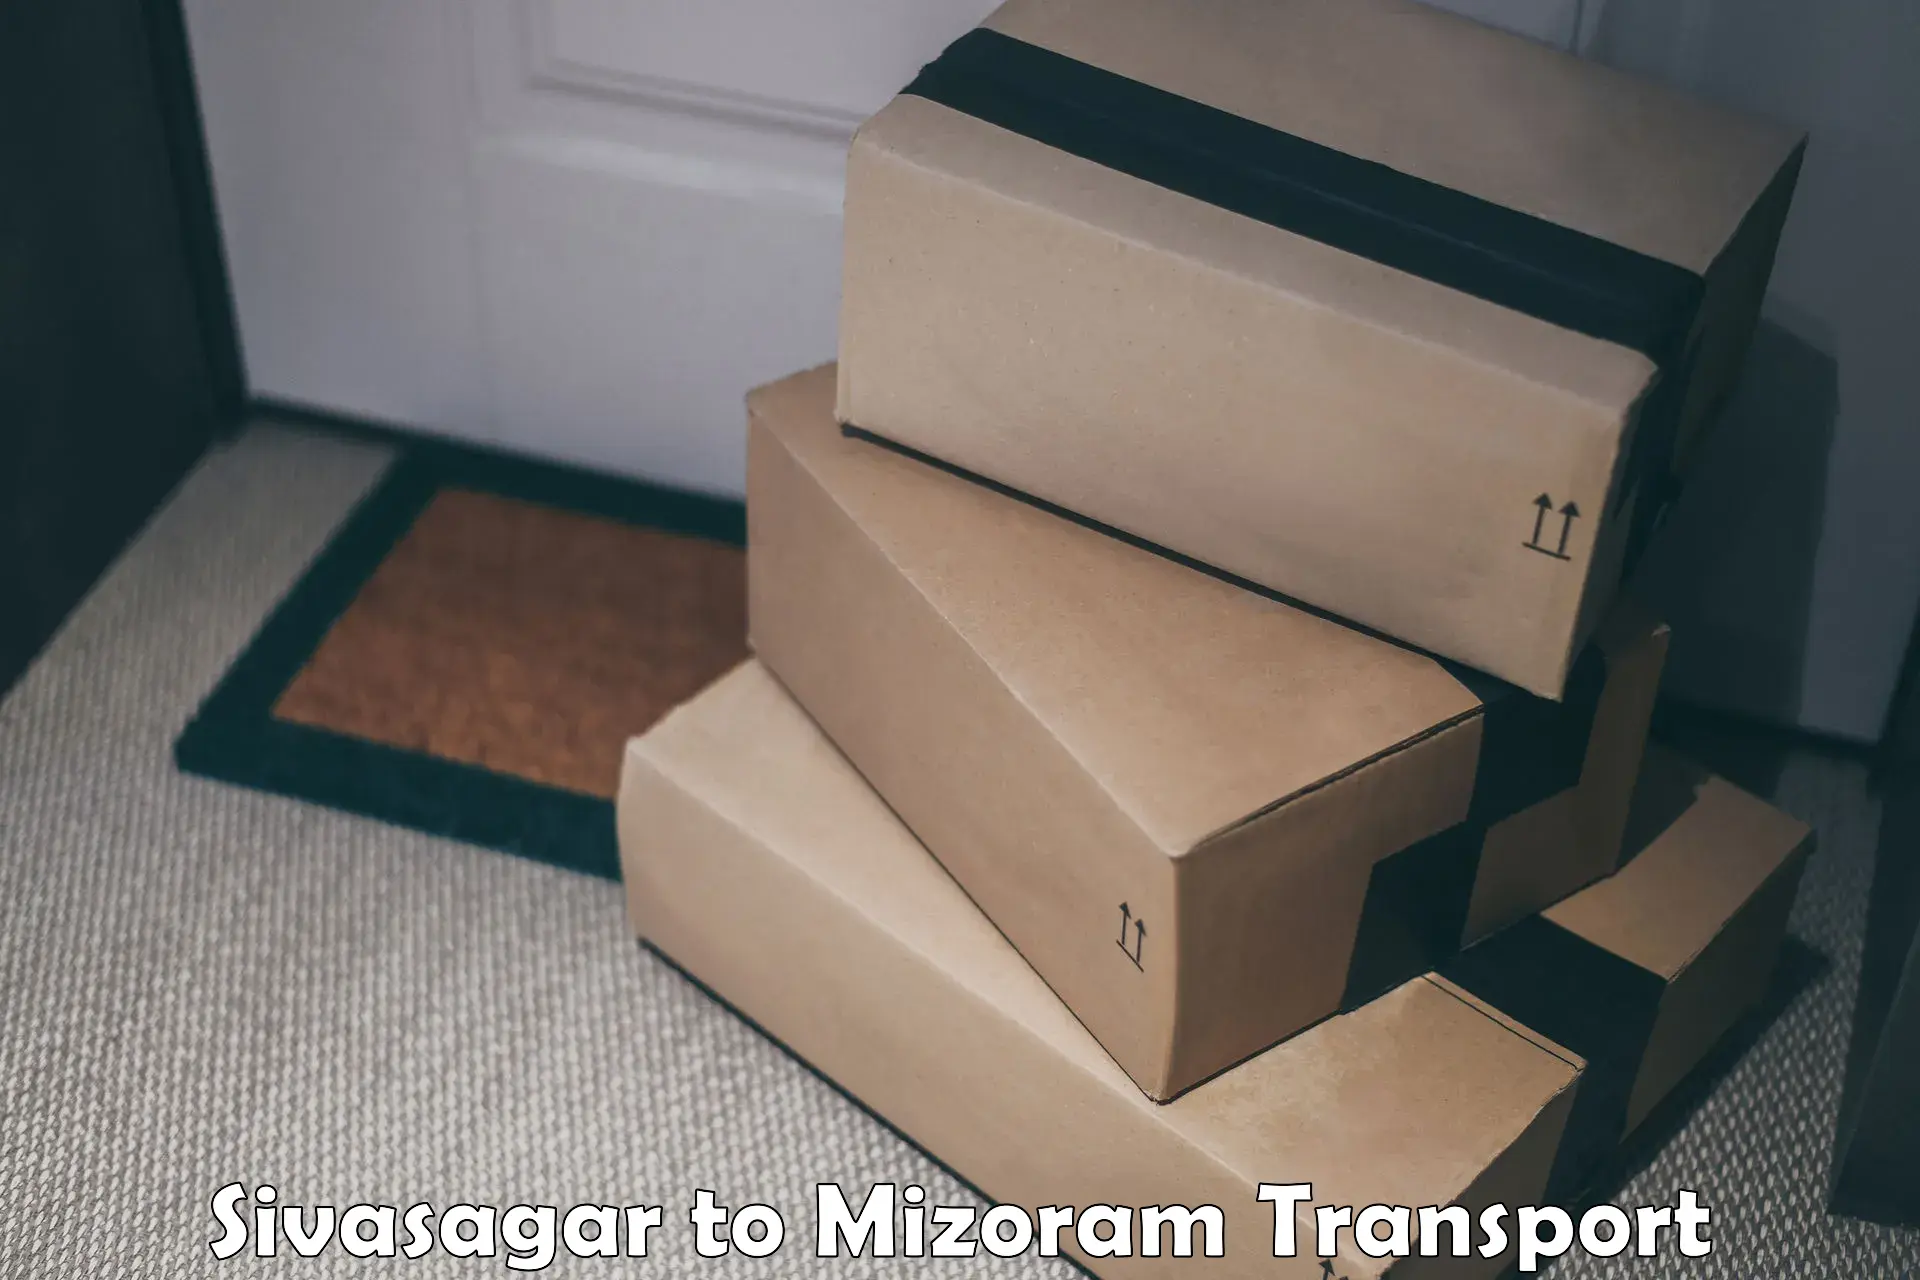 Two wheeler parcel service Sivasagar to Lunglei